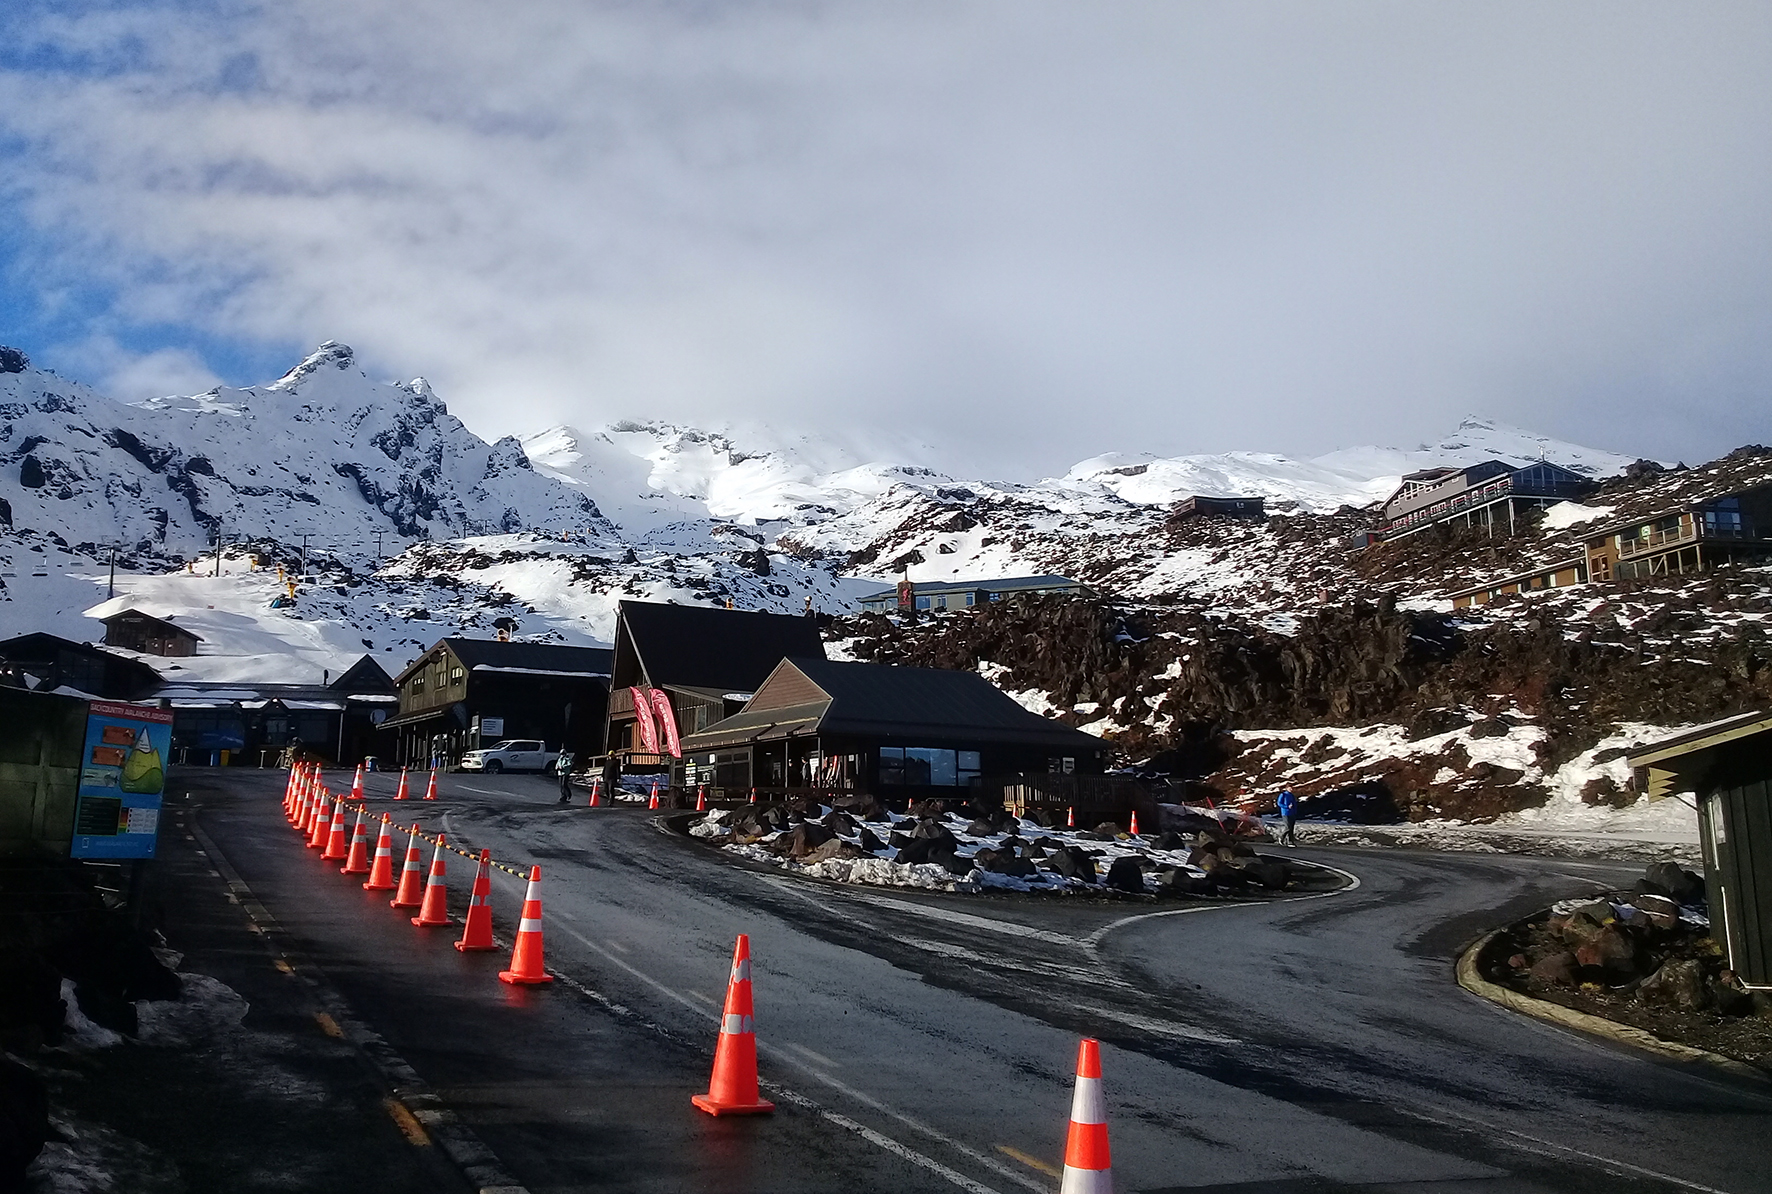 L’arrivée à la station de ski de Whakapapa ; celle-ci ne comporte que très peu d’infrastructures en termes d’hébergement, elle est surtout le point d’accès aux pistes.